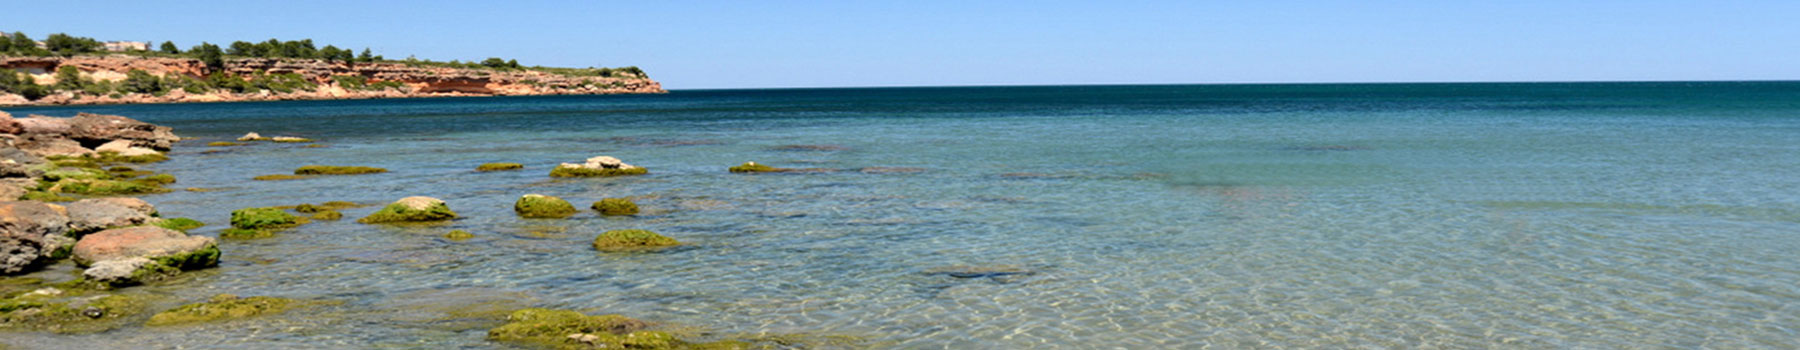 Steilküste in farbigem Kleid – die Route von l’Ampolla richtung l’Ametlla de Mar